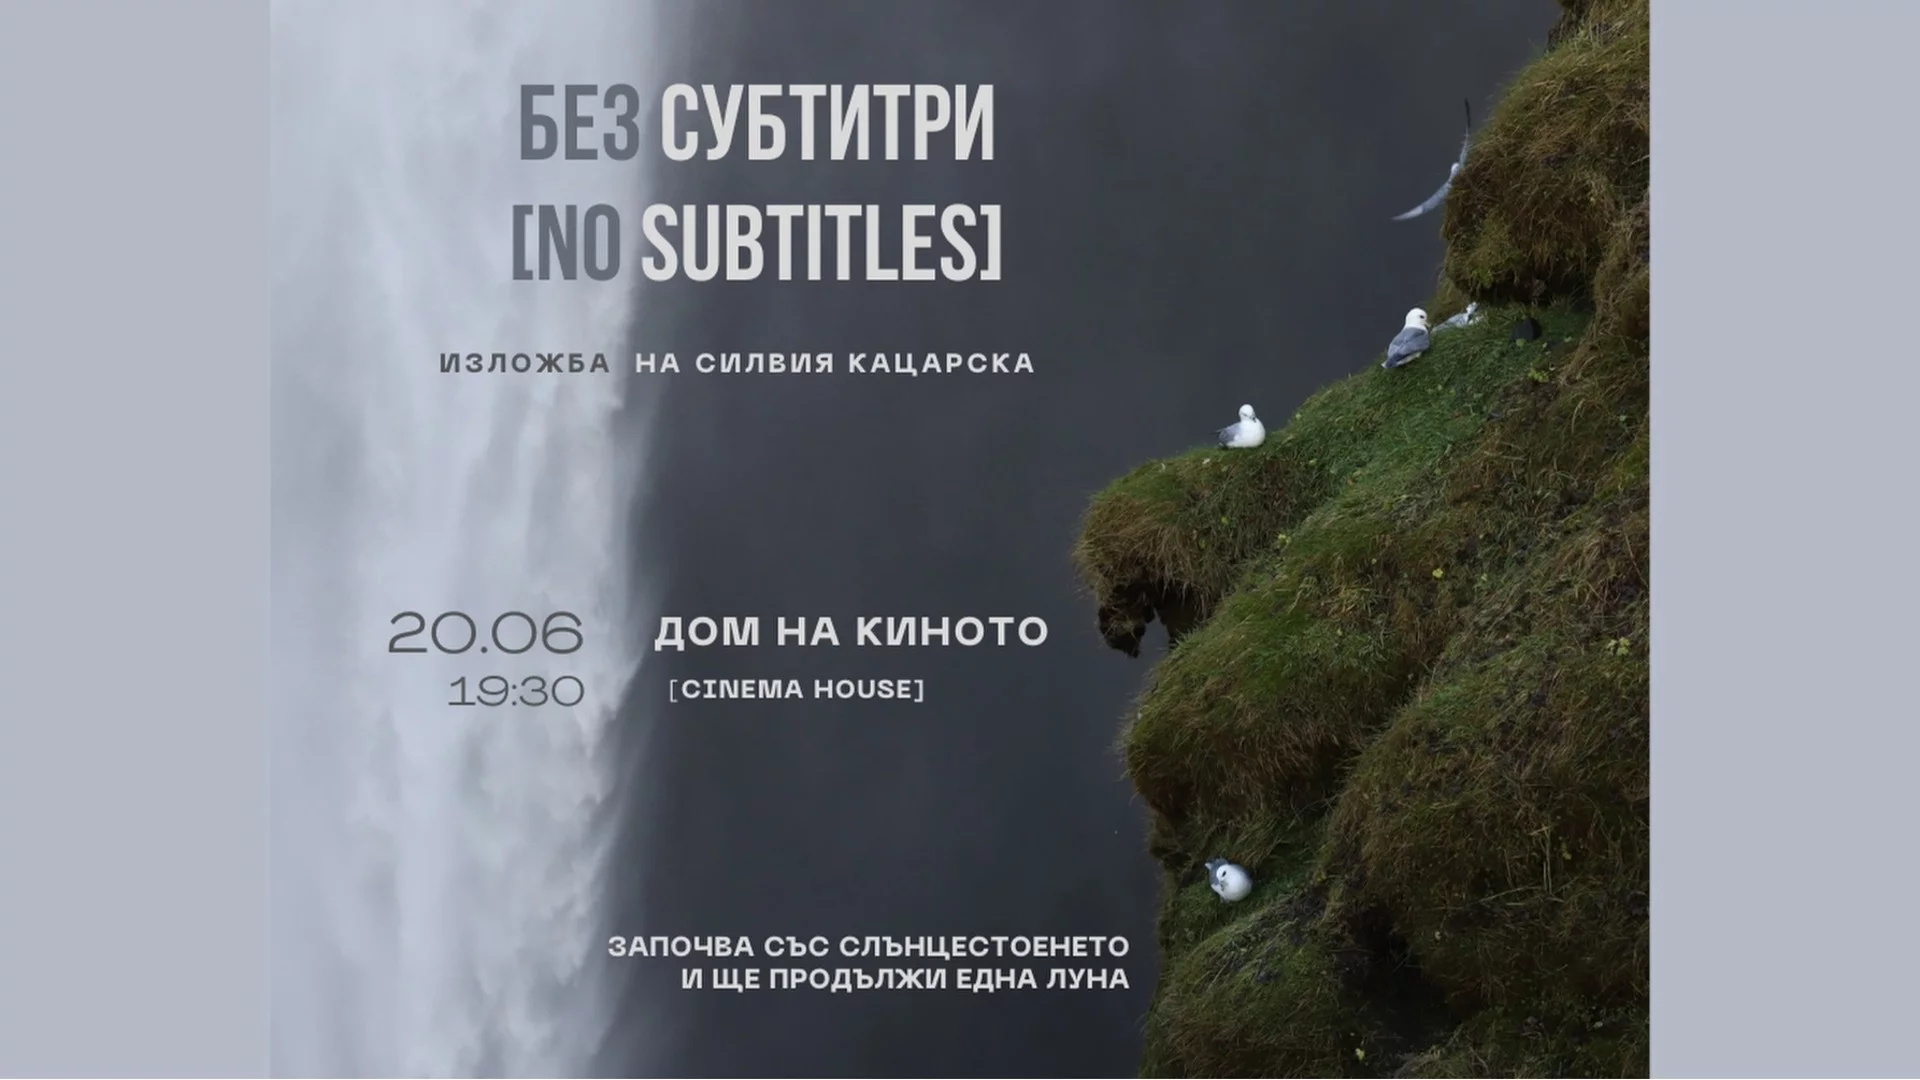 "Без субтитри": Аудио-визуална изложба на Силвия Кацарска в Дом на киното